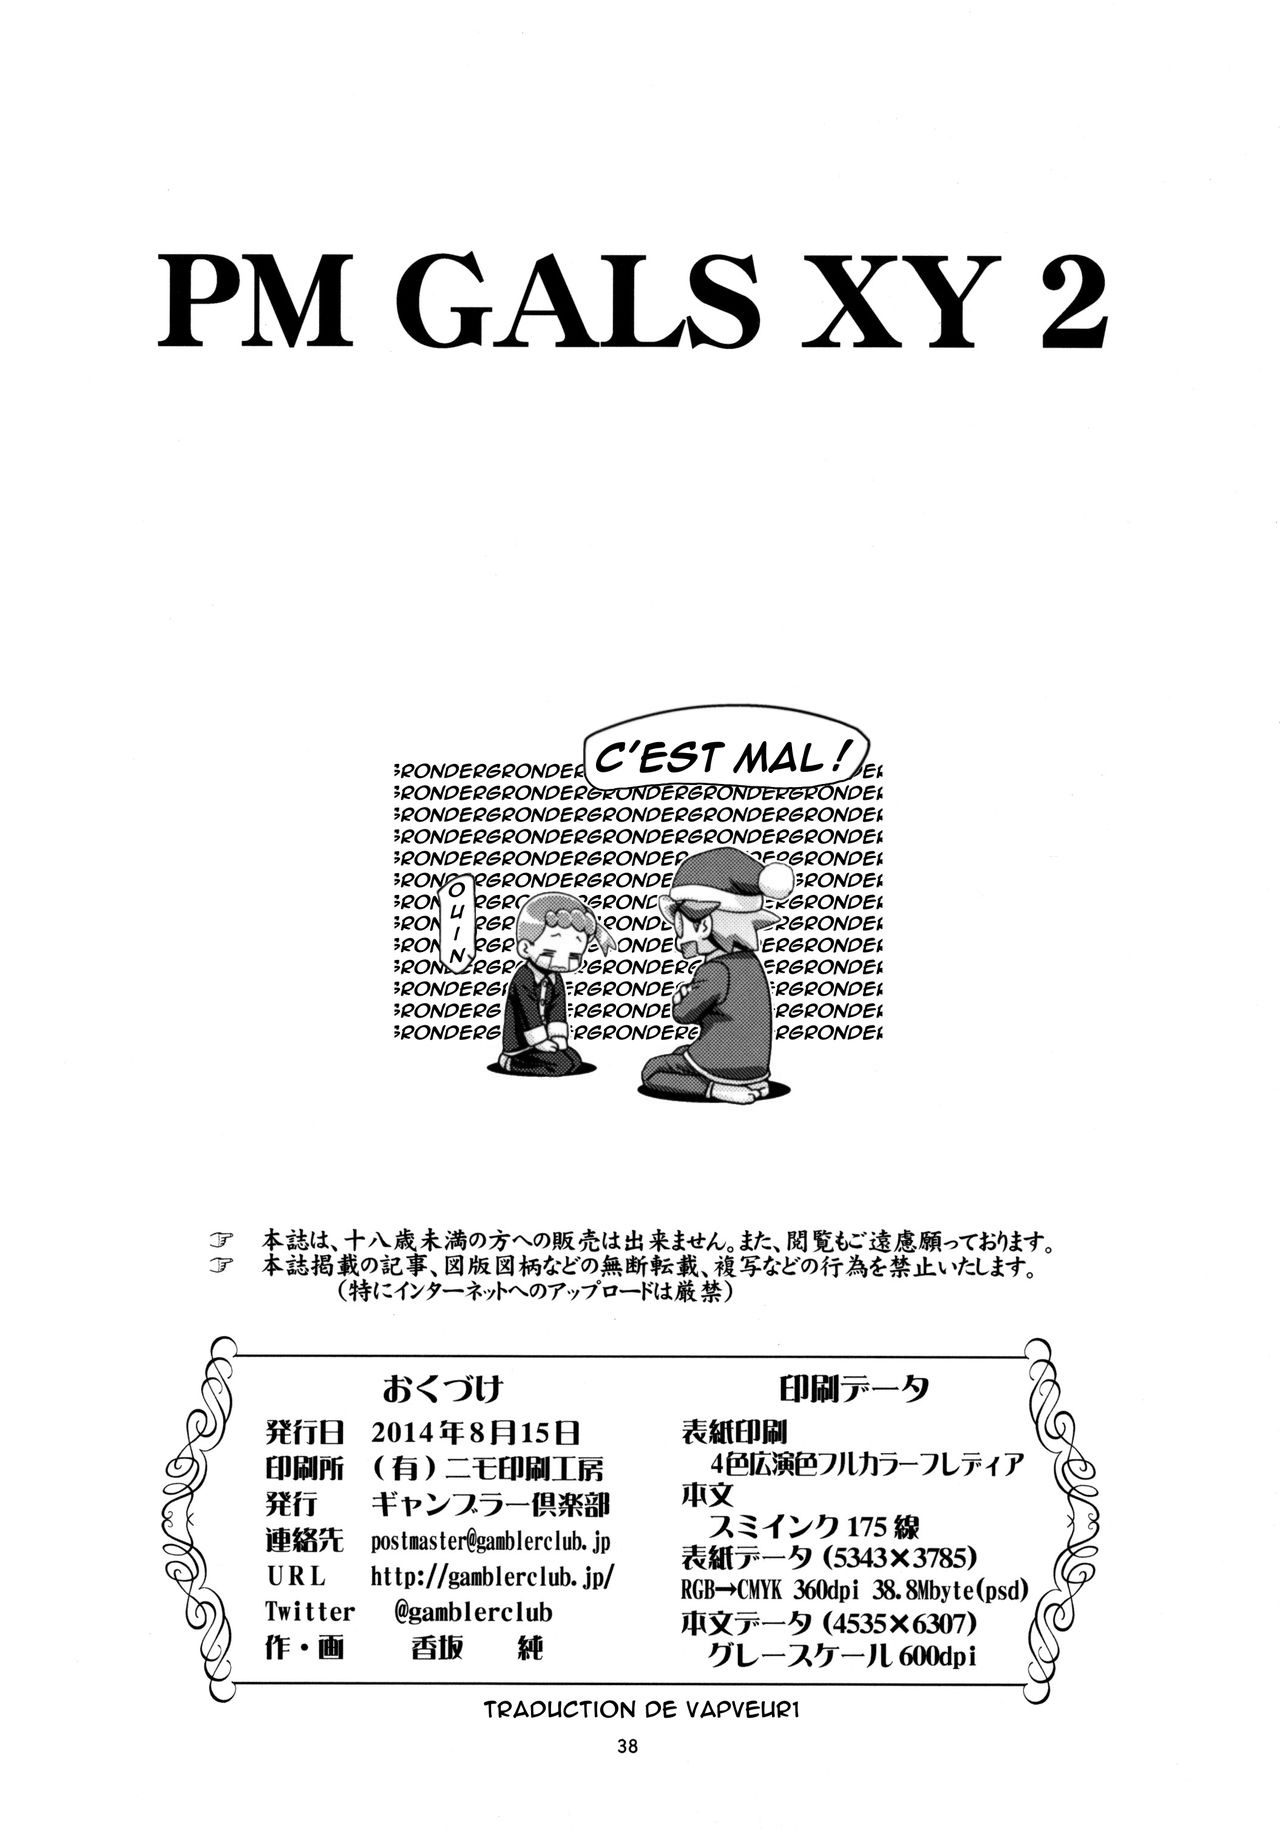 PM GALS XY 2 numero d'image 35